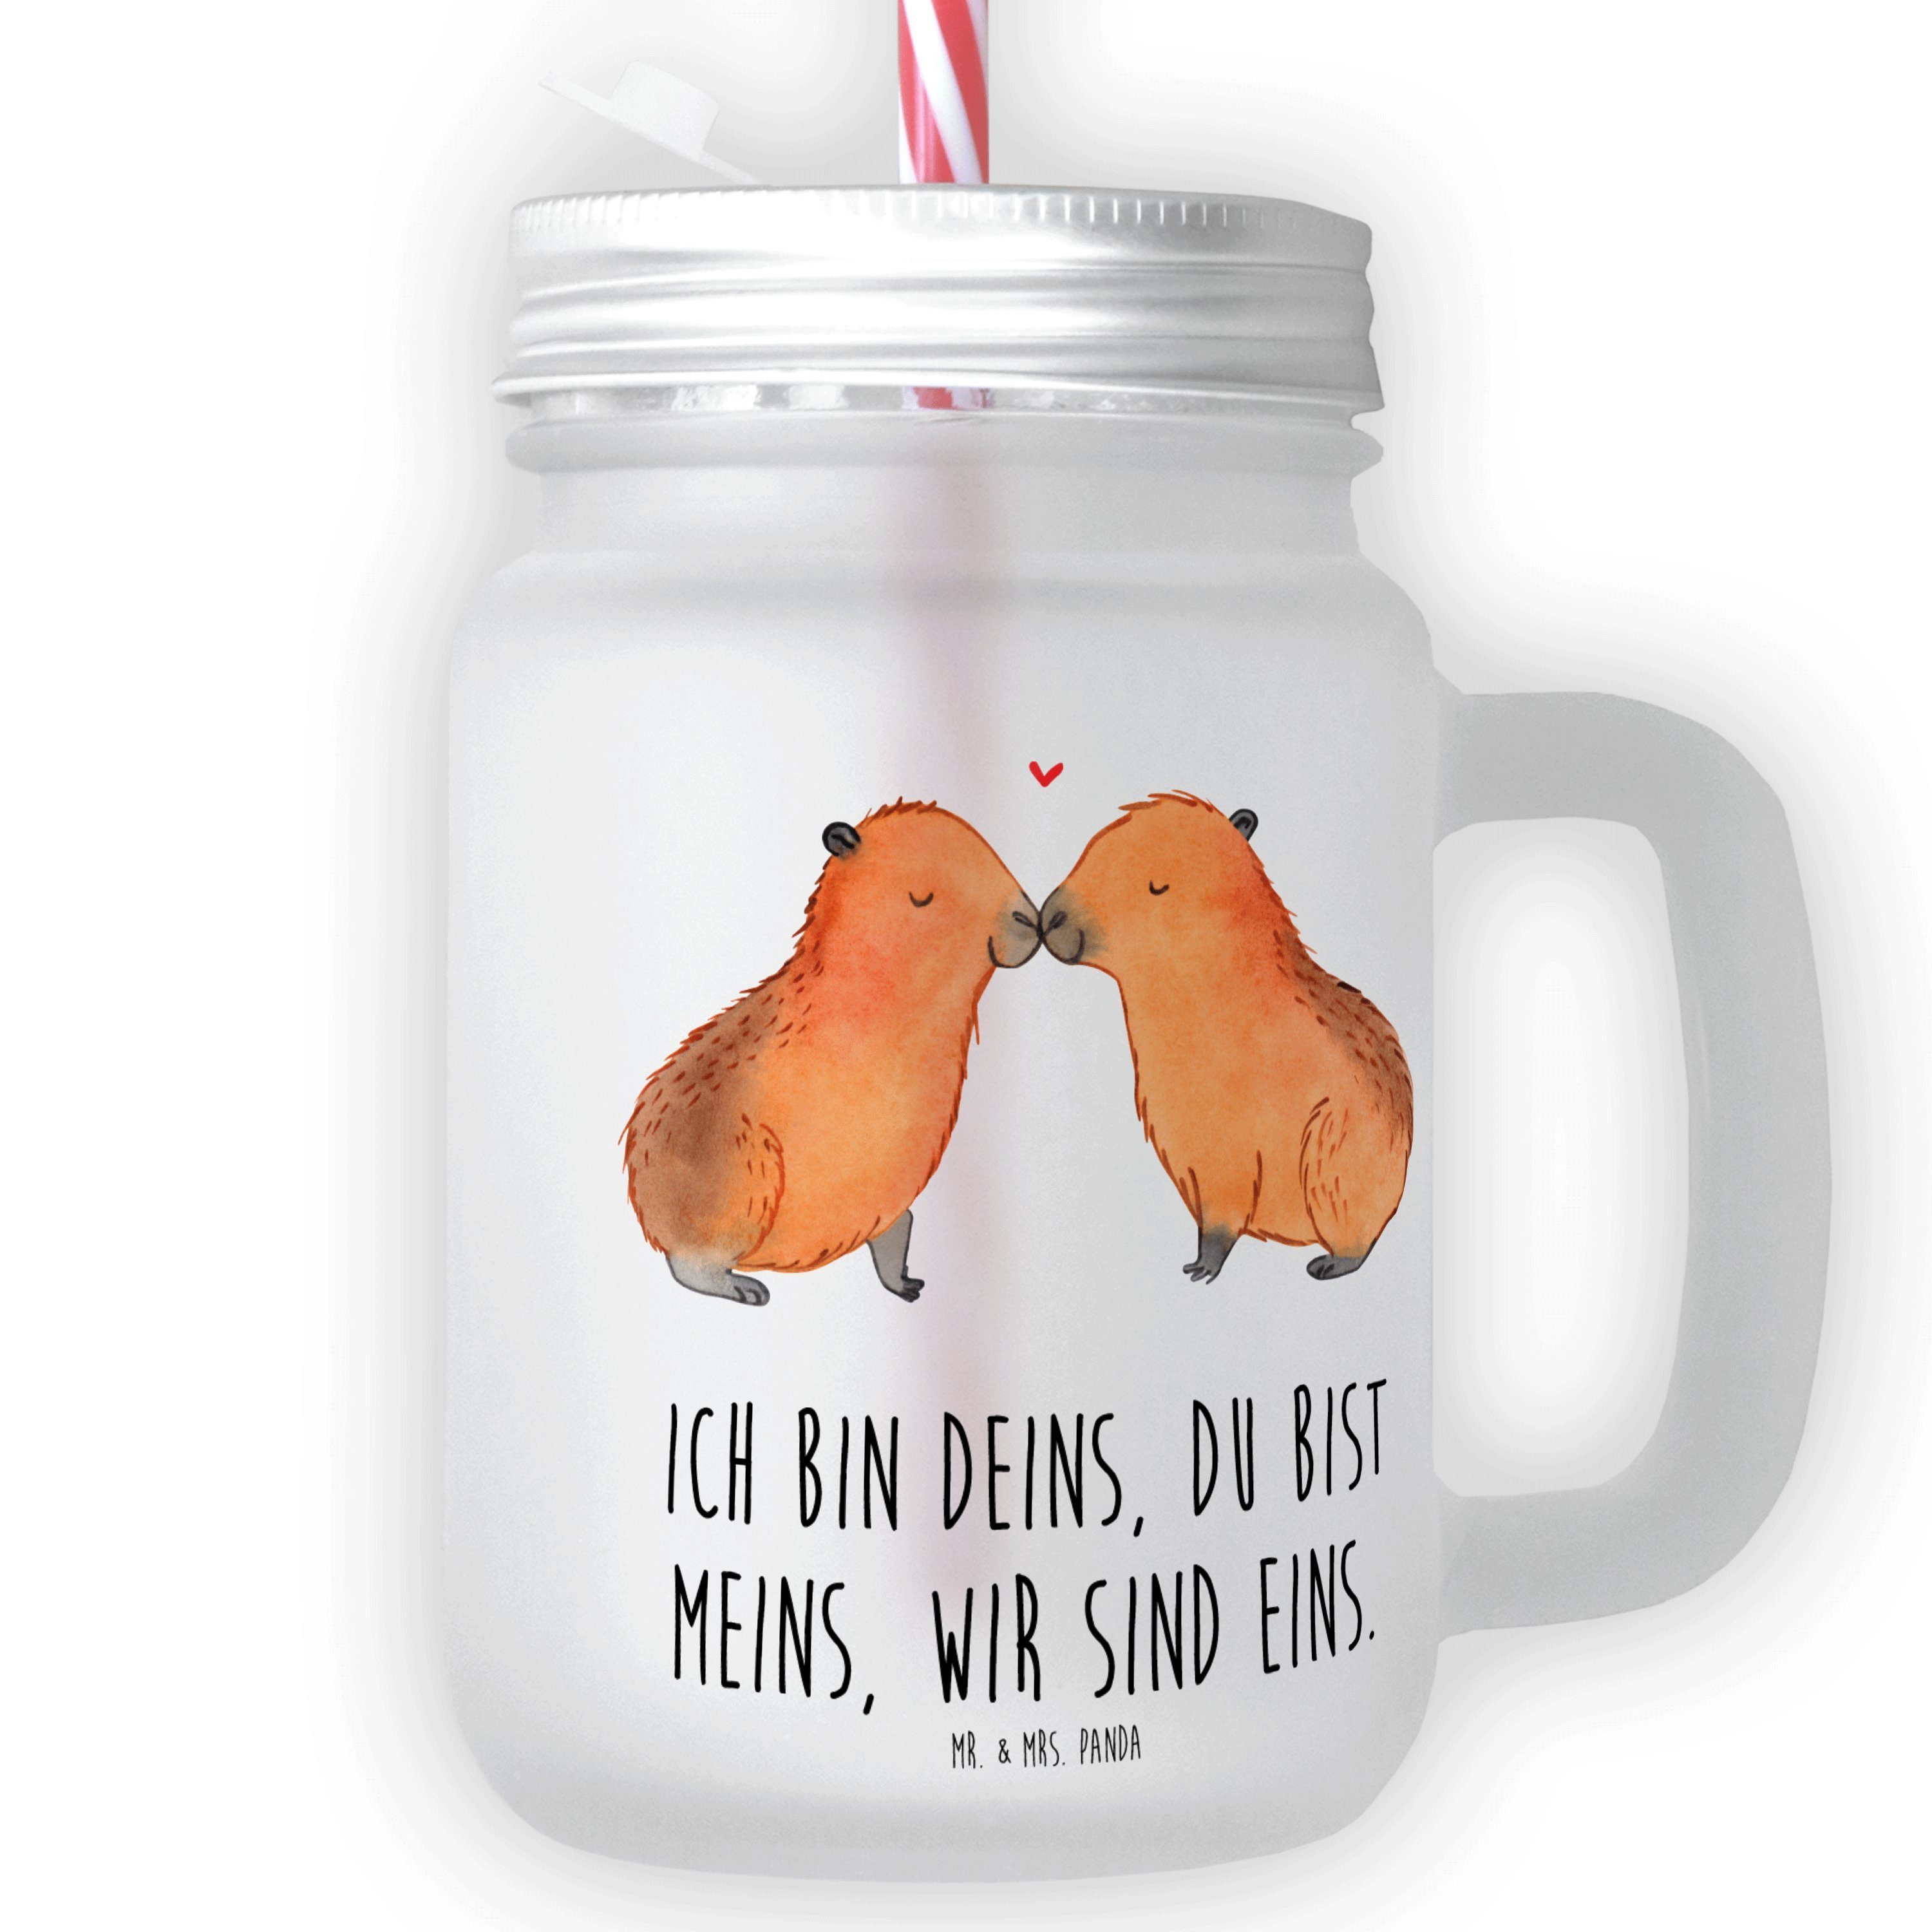 Mr. & Mrs. Panda Glas Retro-Glas, - Cock, Transparent Premium Liebe - Capybara Sommerglas, Glas Geschenk